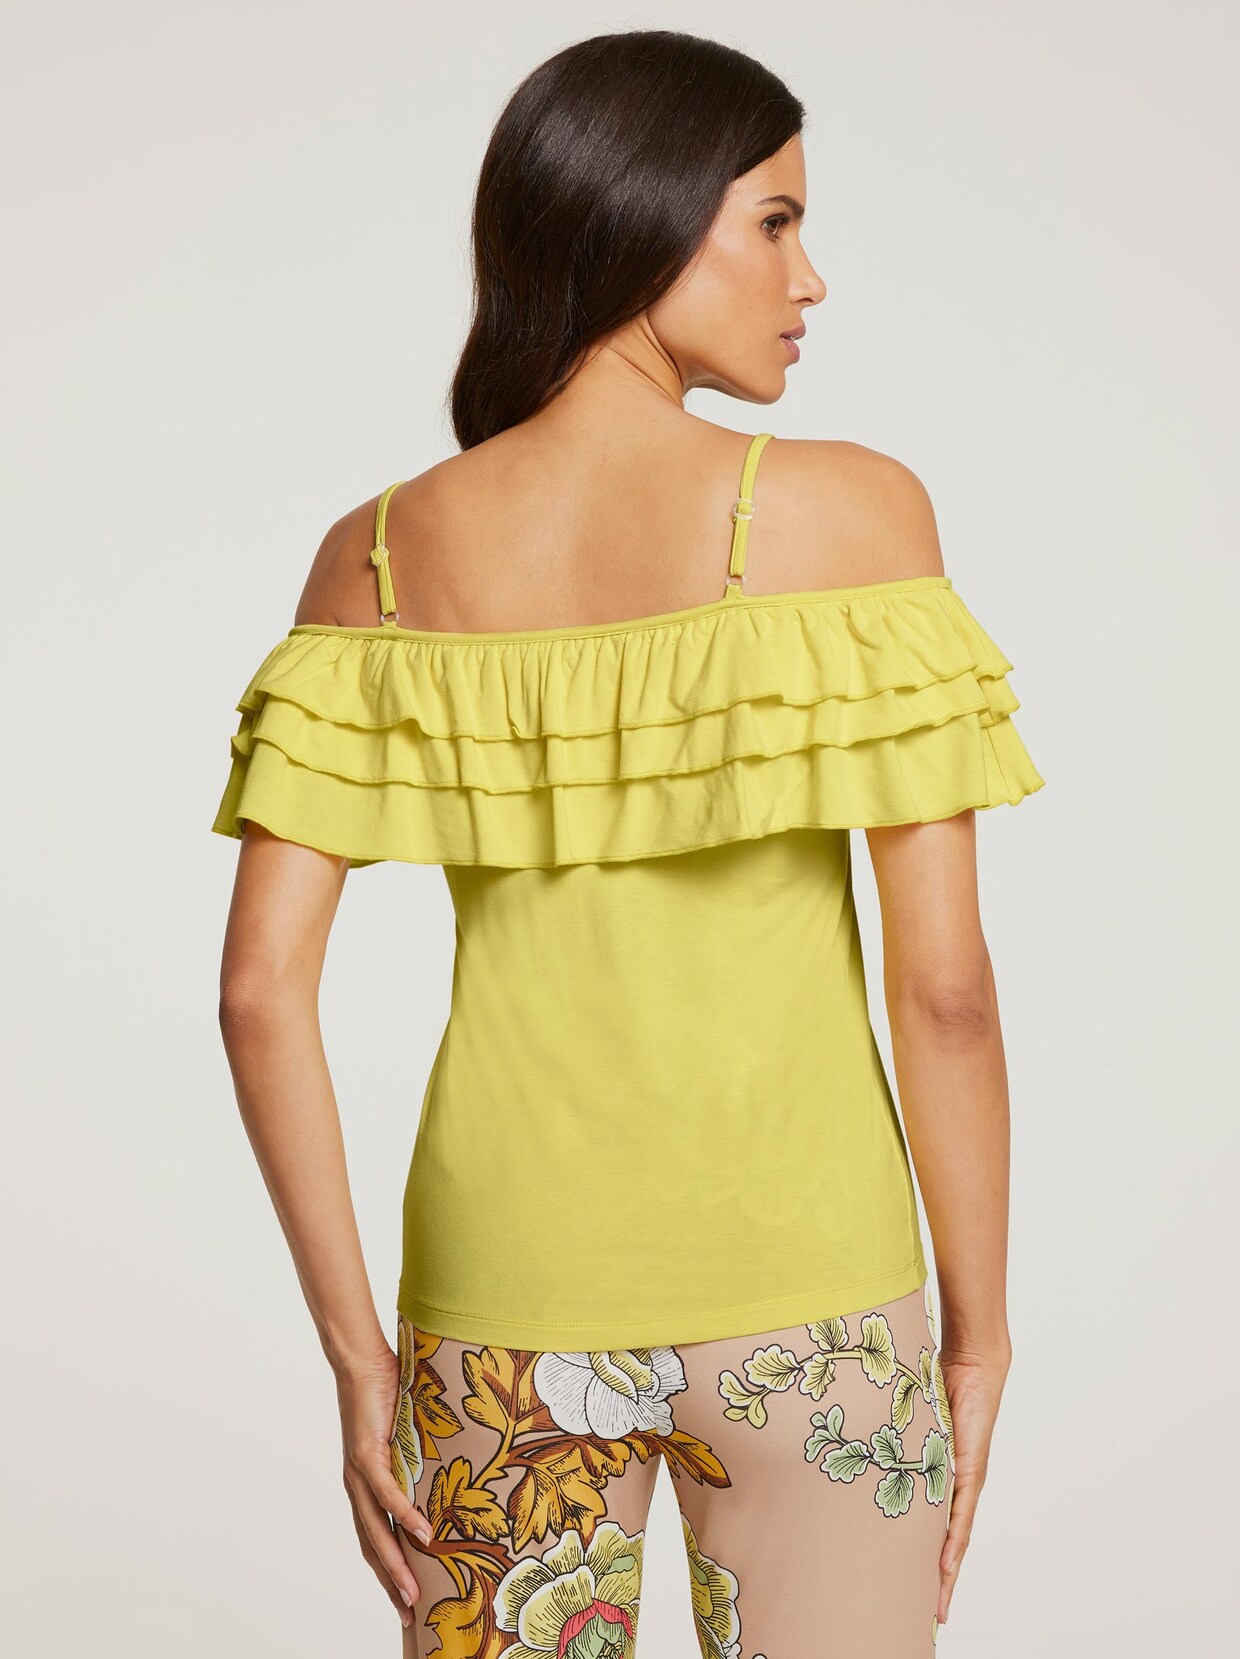 Ashley Brooke Shirt - lemon